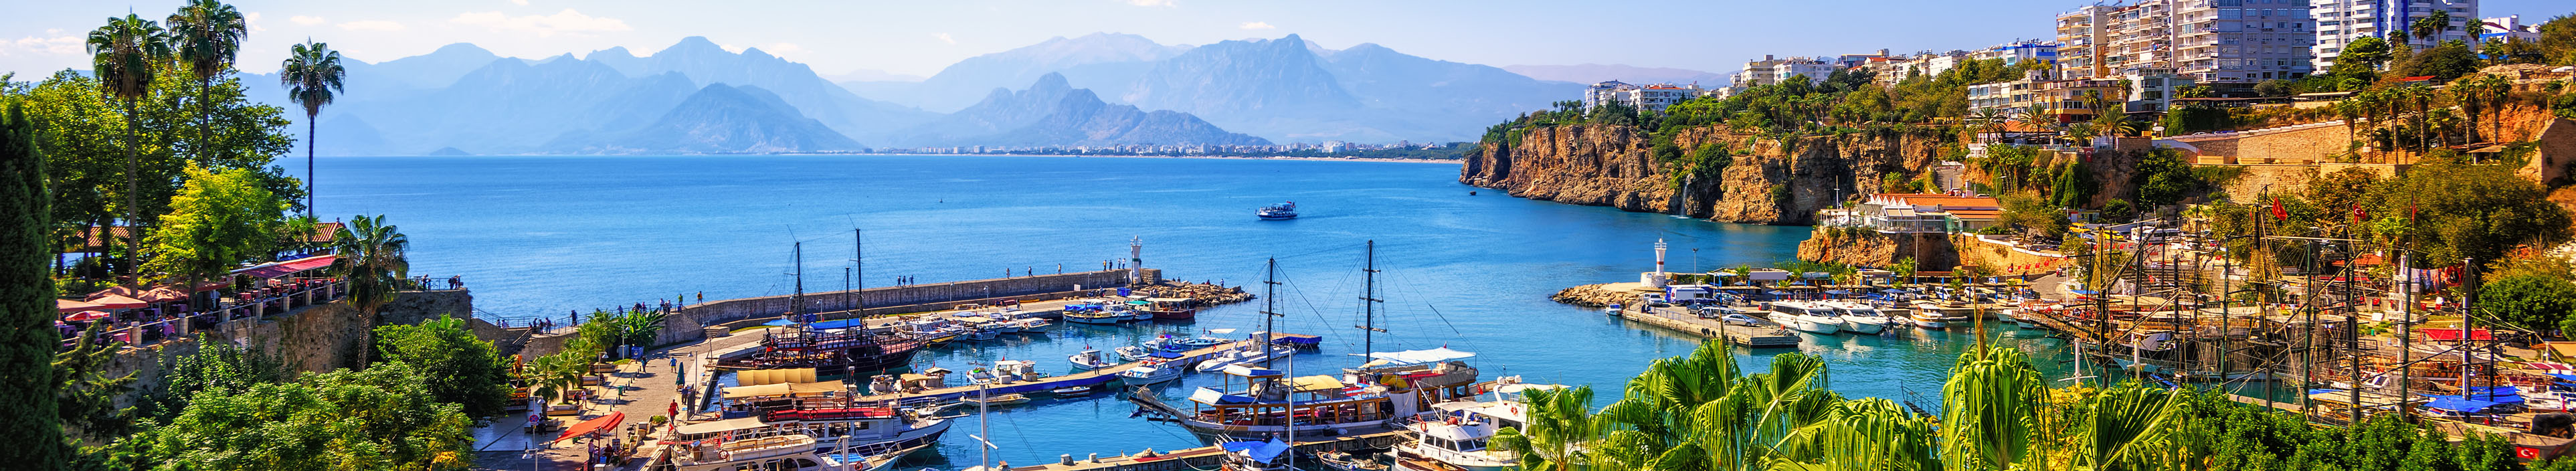 Blick auf den Hafen in Antalya